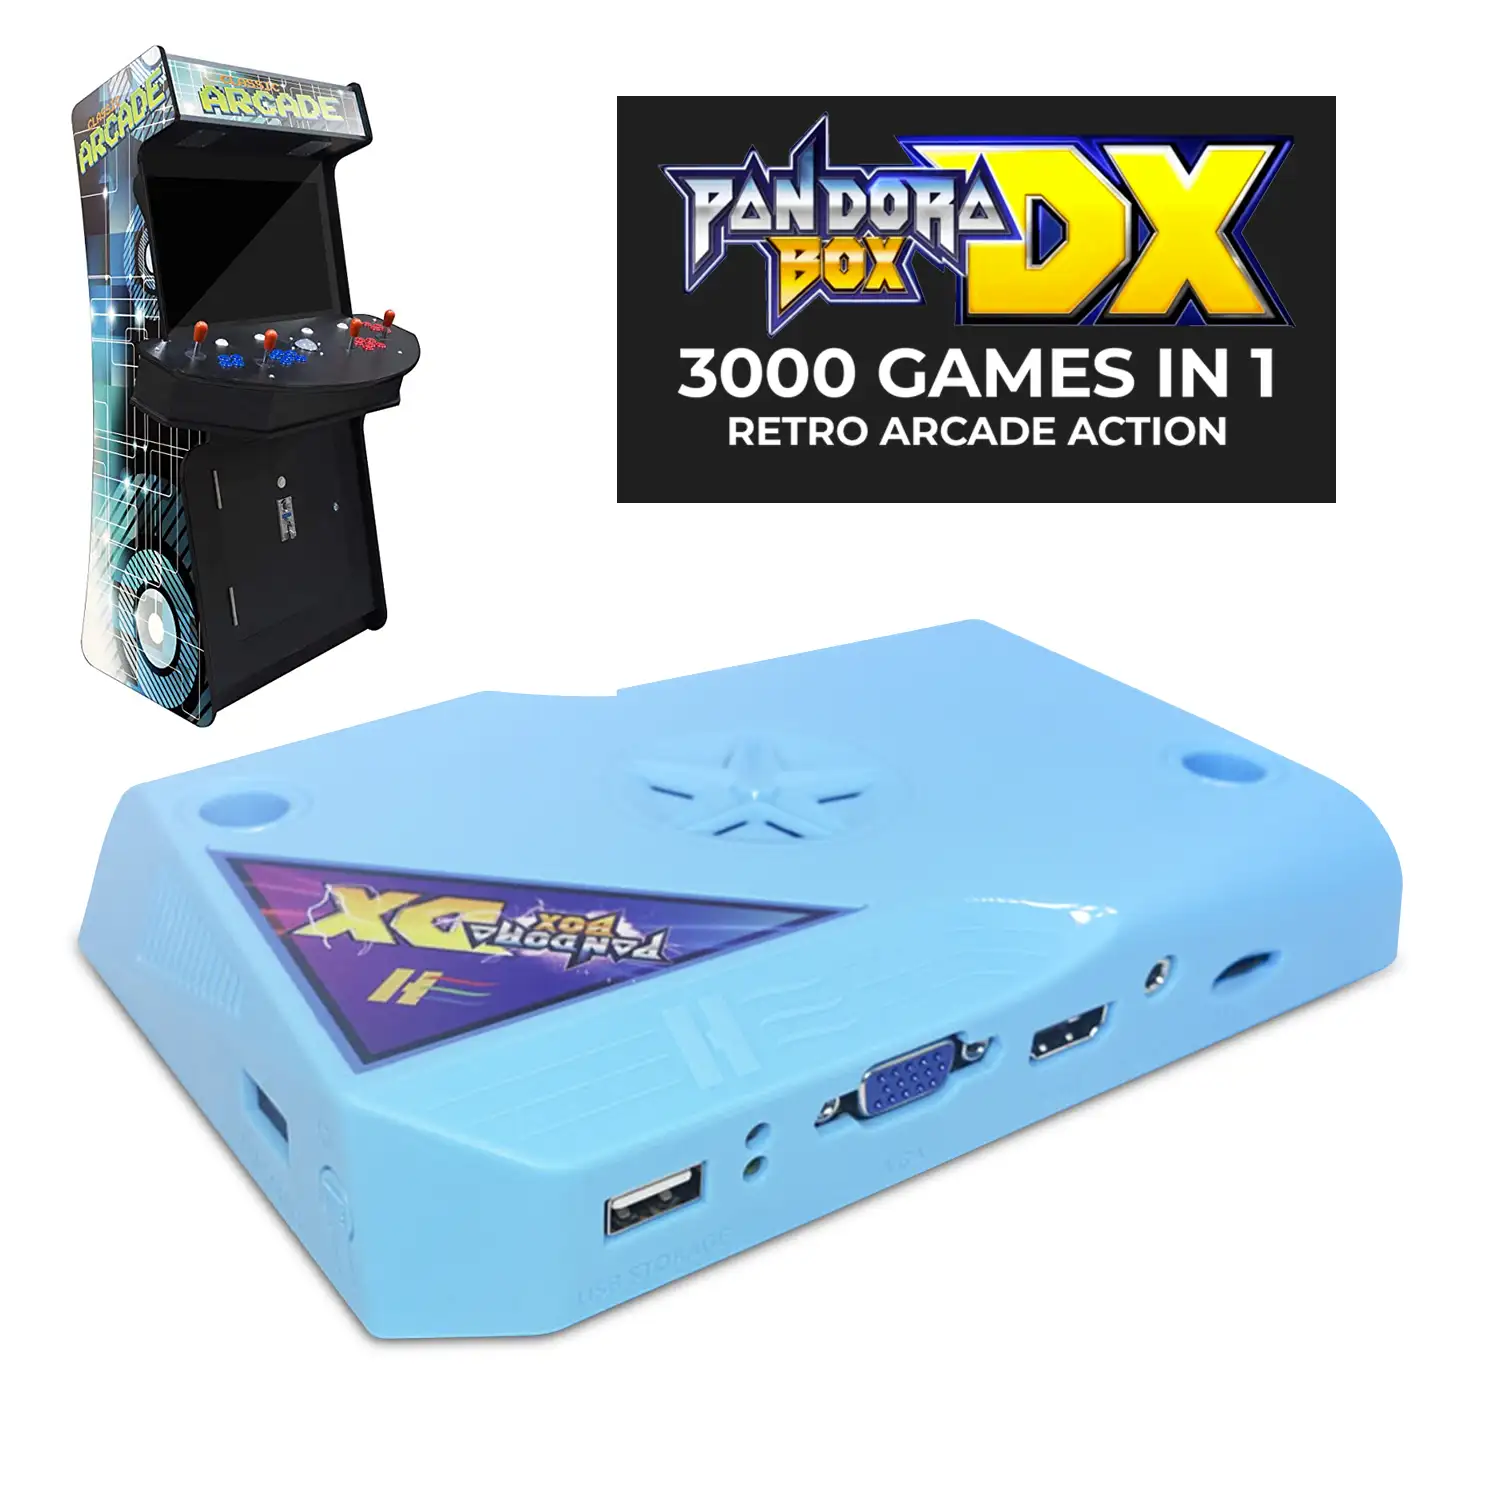 Pandoras Box DX Arcade Jamma Version. 3000 juegos, salida HDMI, JAMMA y VGA. HD720P. Para máquinas recreativas con conexión Jamma.